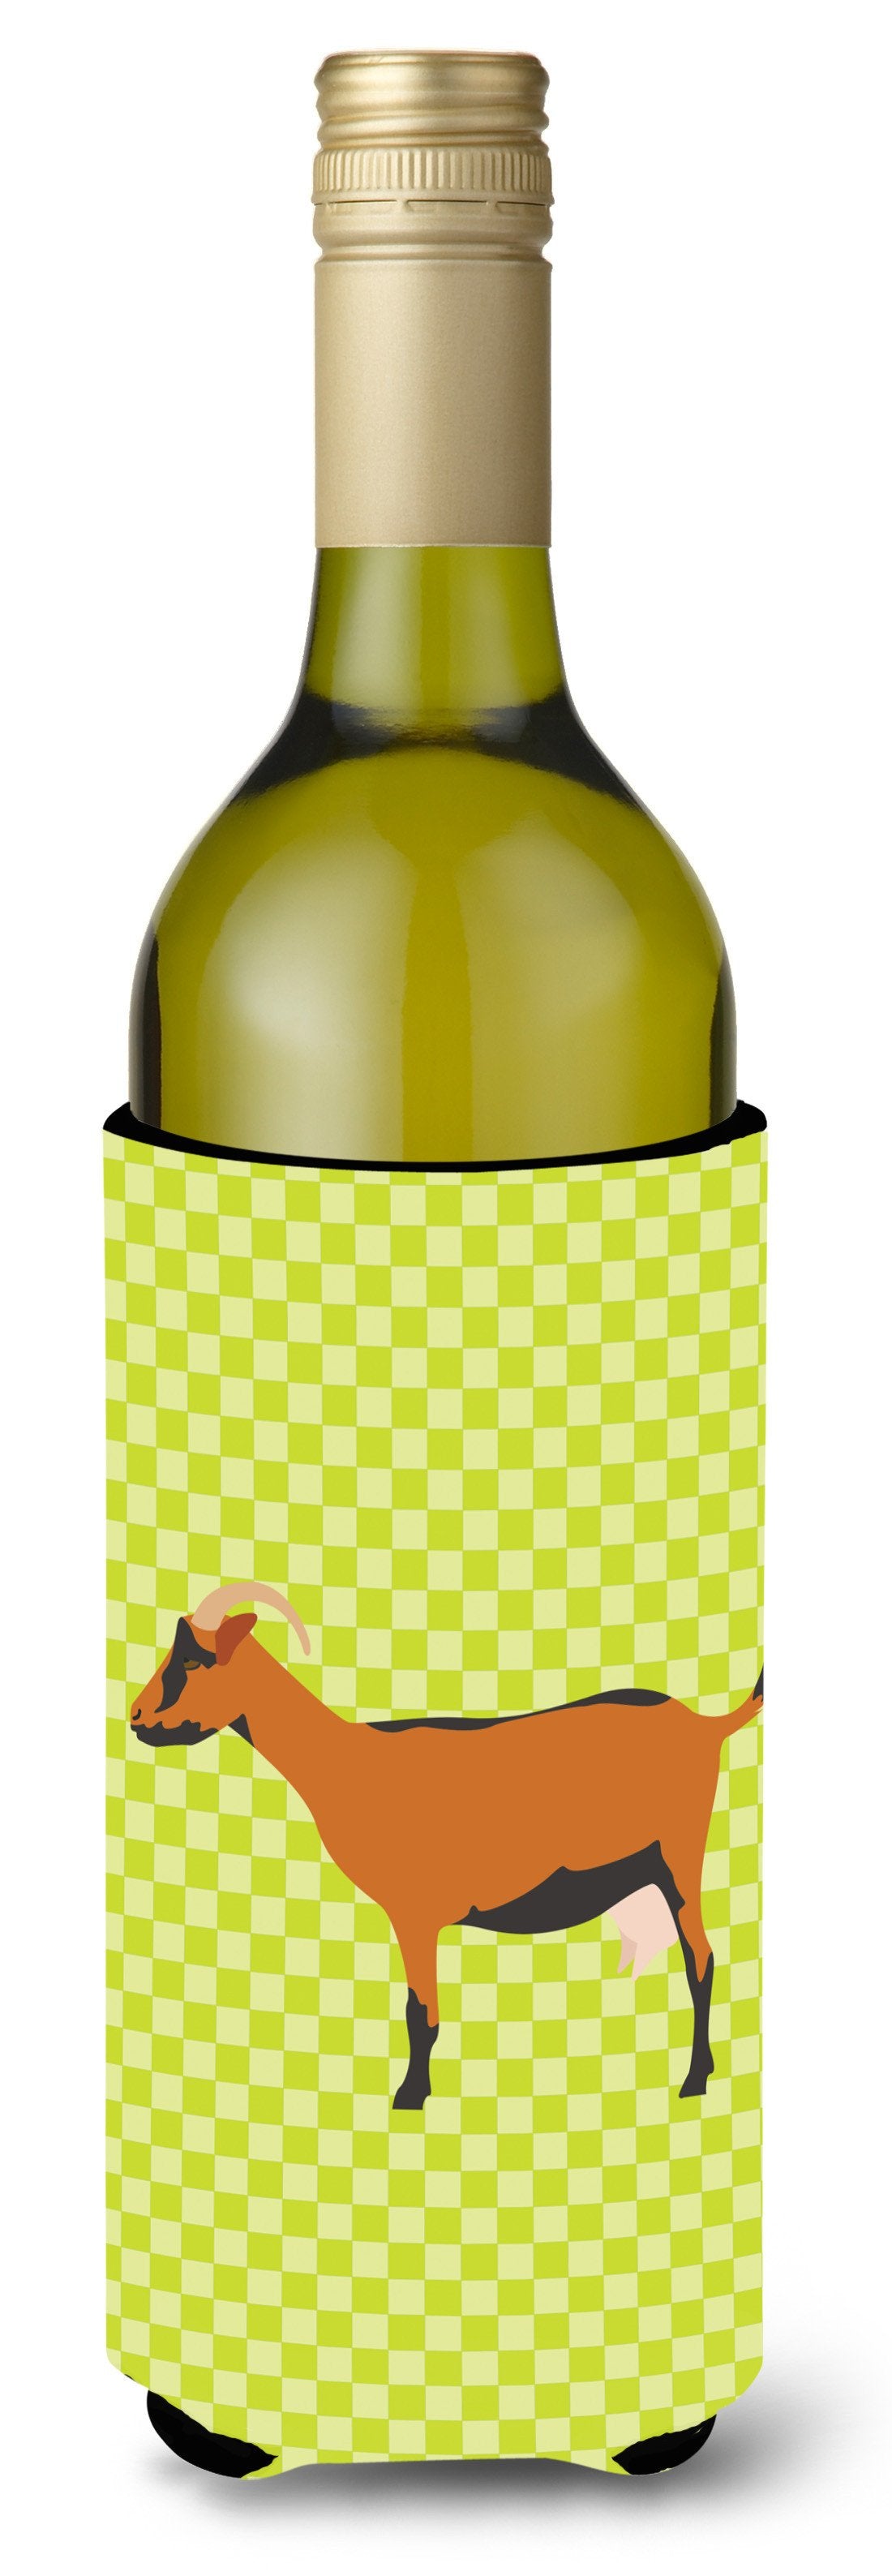 Oberhasli Goat Green Wine Bottle Beverge Insulator Hugger BB7714LITERK by Caroline's Treasures